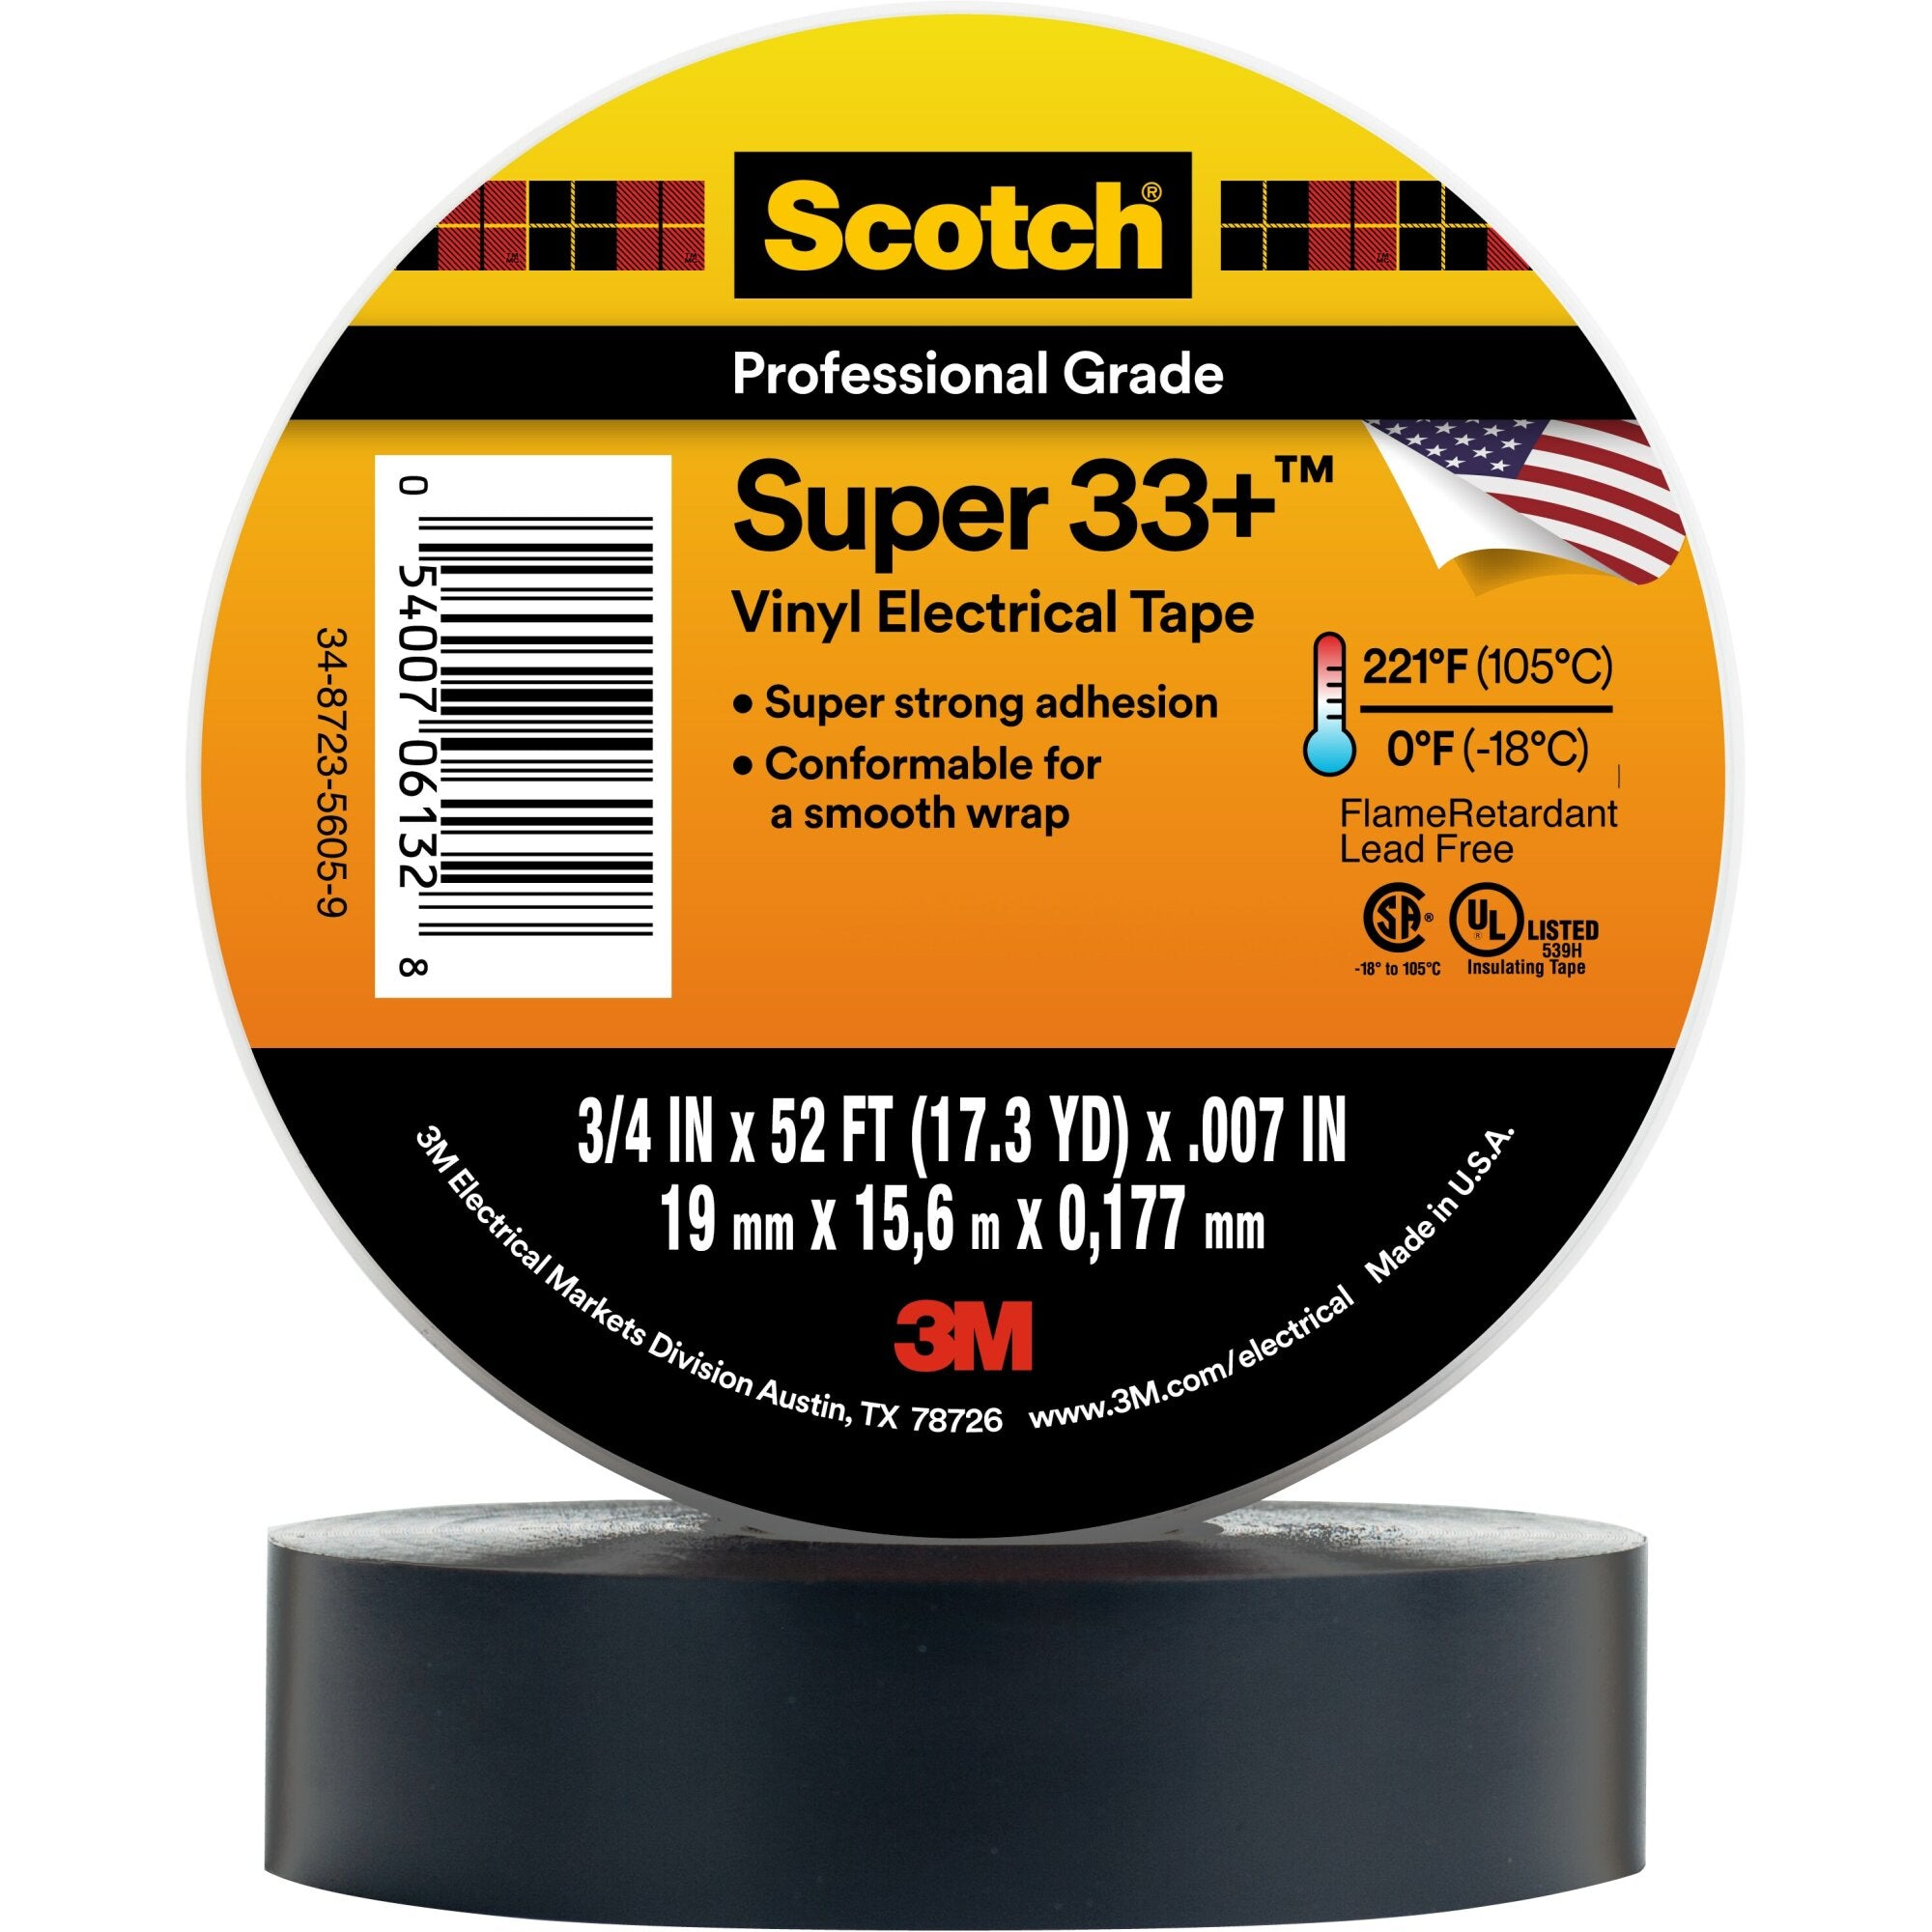 Scotch? Super 33+ Vinyl Electrical Tape, 3/4 in x 52 ft, Black, 10
rolls/carton